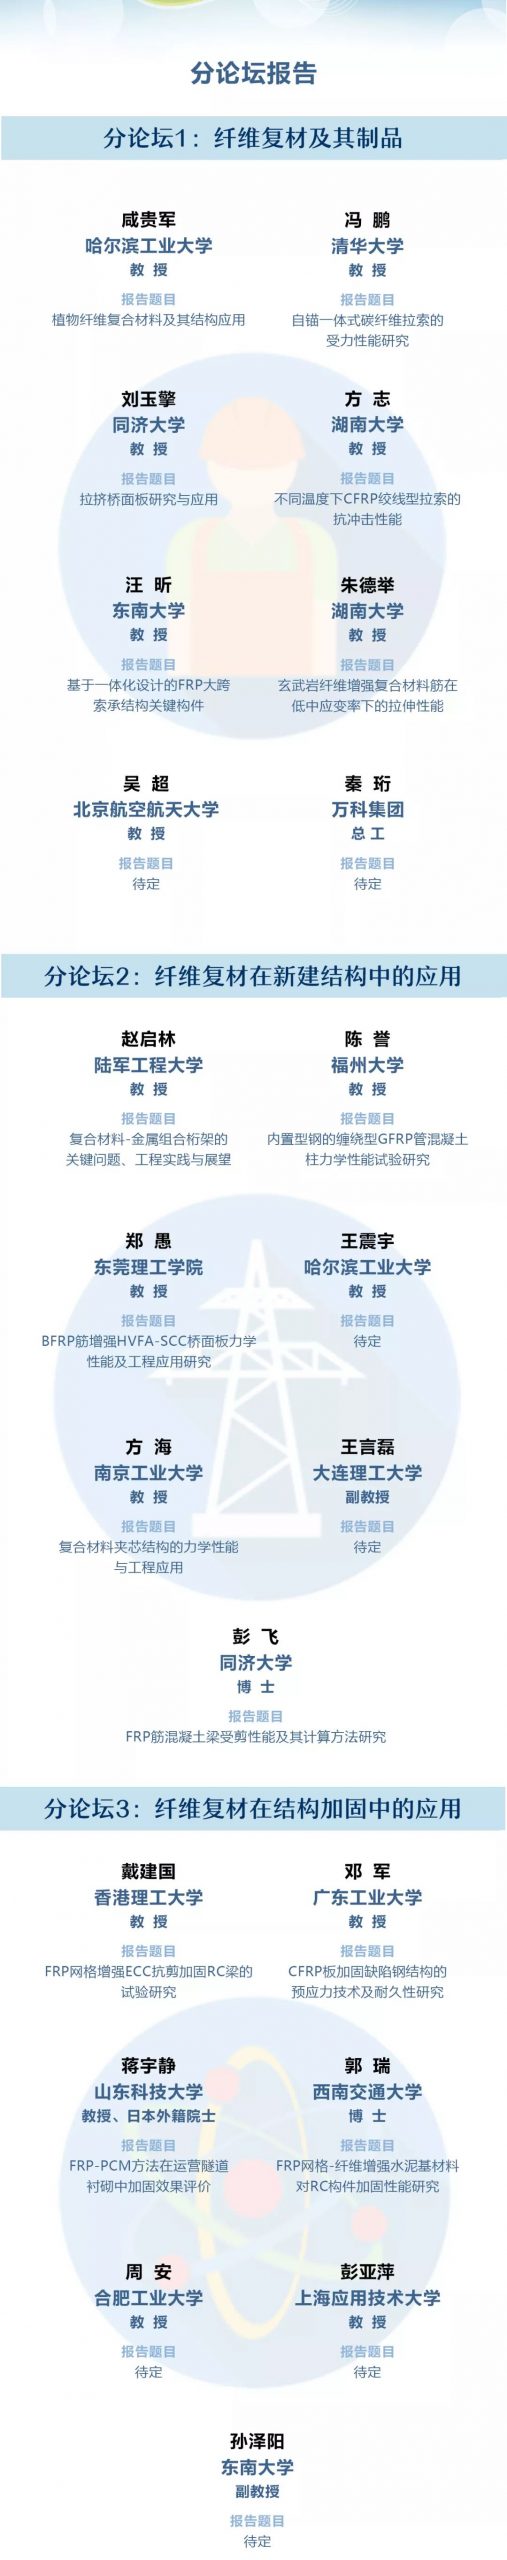 2019中国土木工程纤维增强复合材料高峰论坛暨第十一届全国建设工程FRP应用技术交流会3号通知